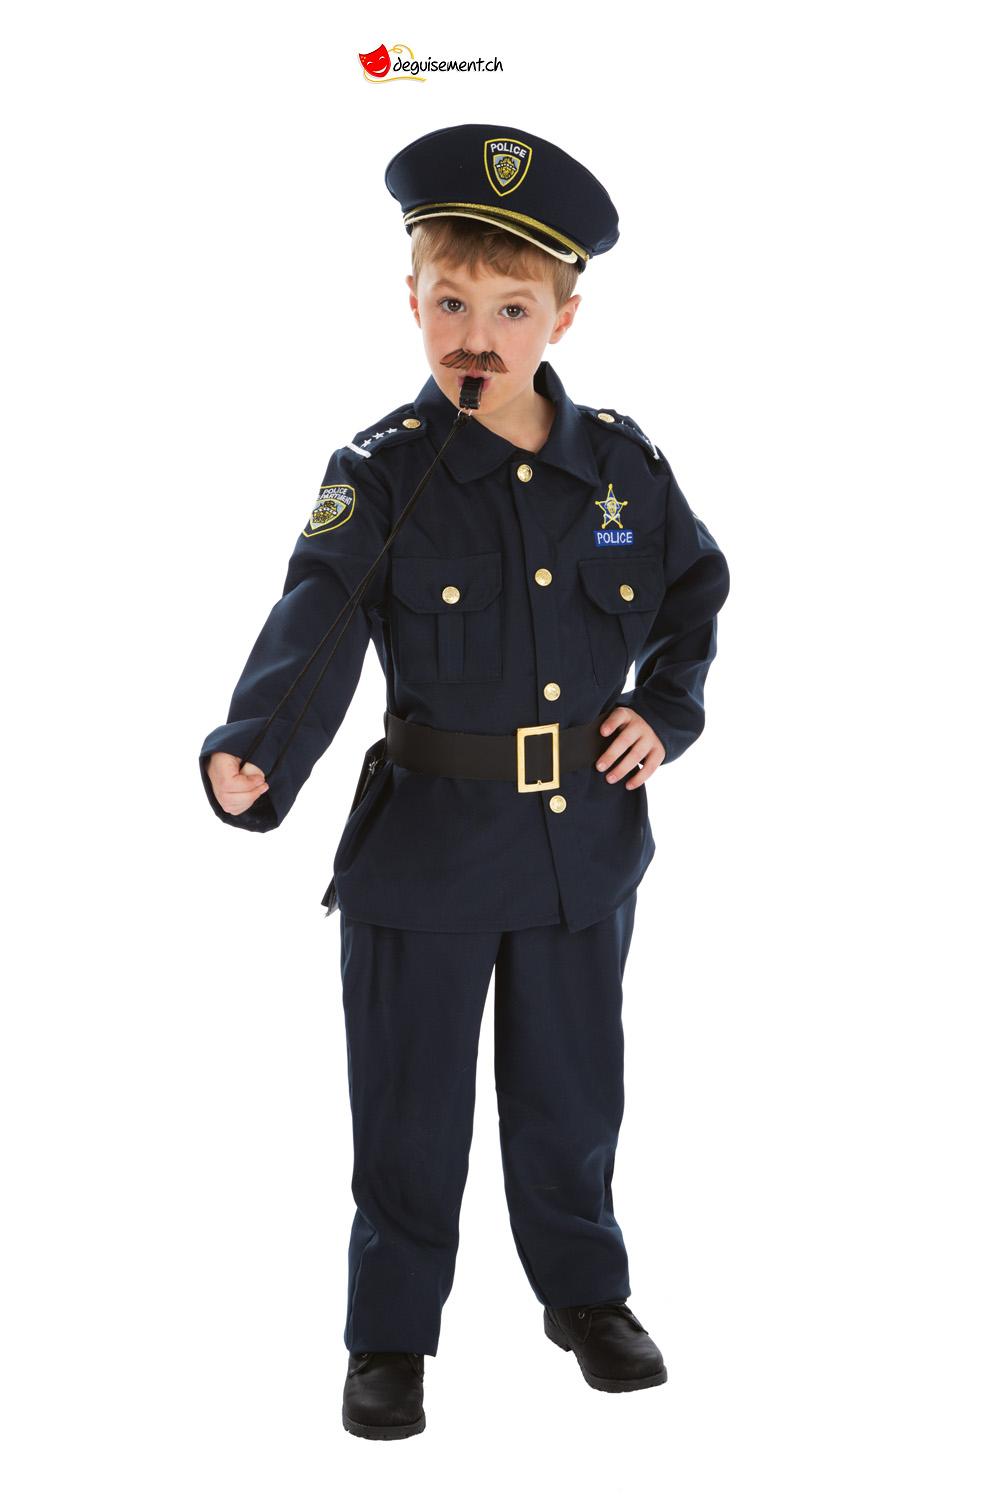 Déguisement de police anglais pour un enfant